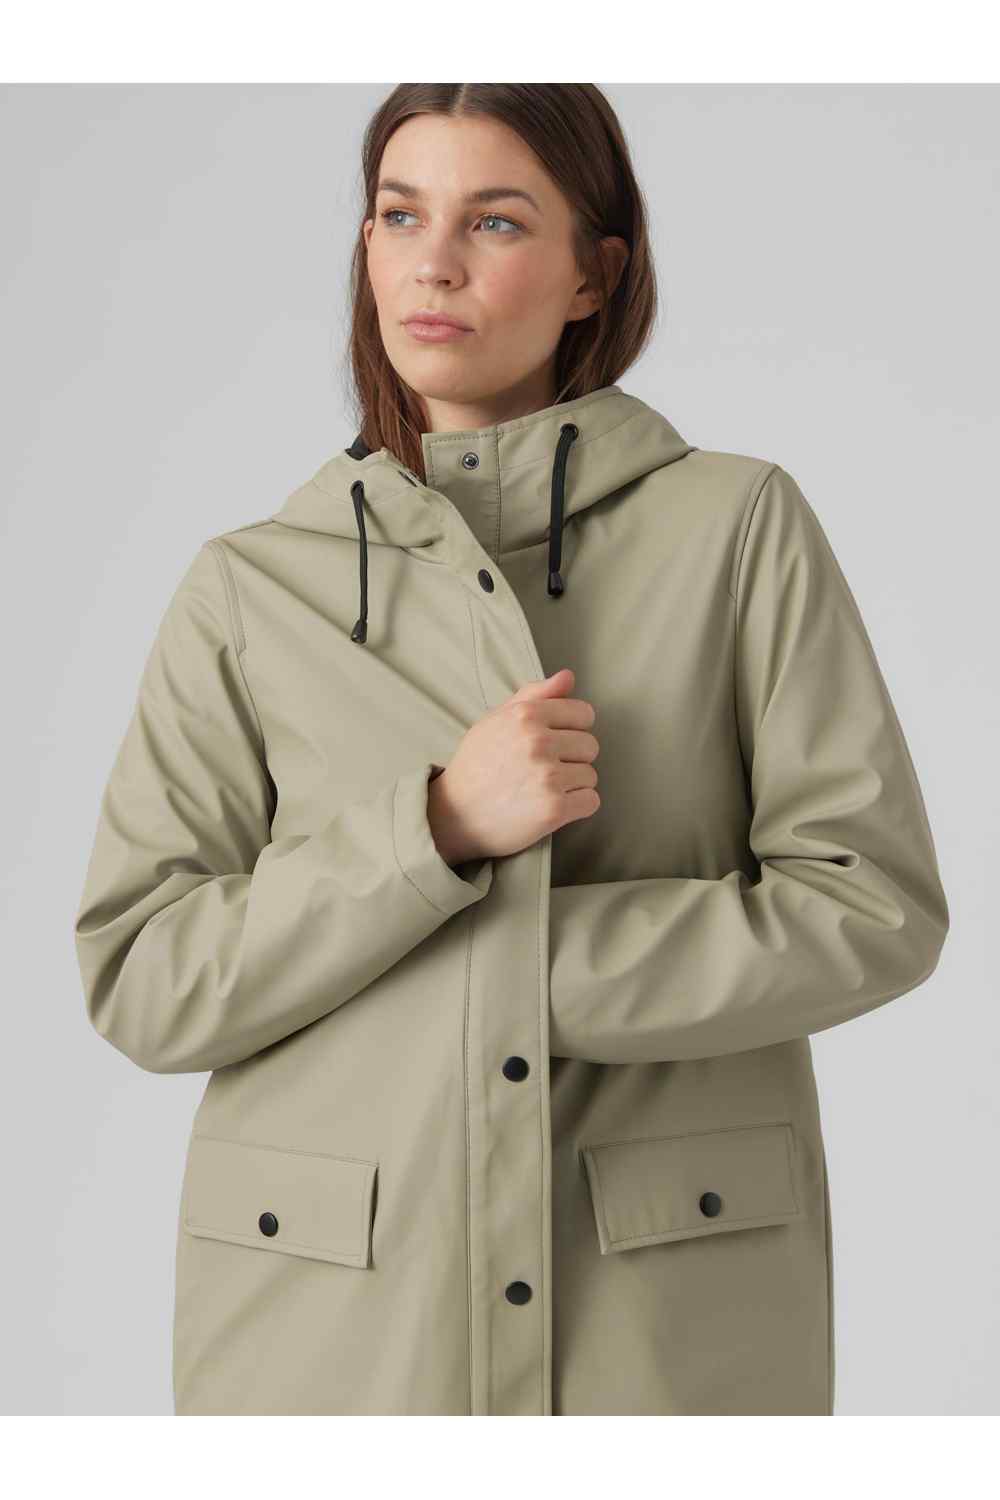 Vero Moda Mvasta Rain Coat - Dark Green 3 Shaws Department Stores